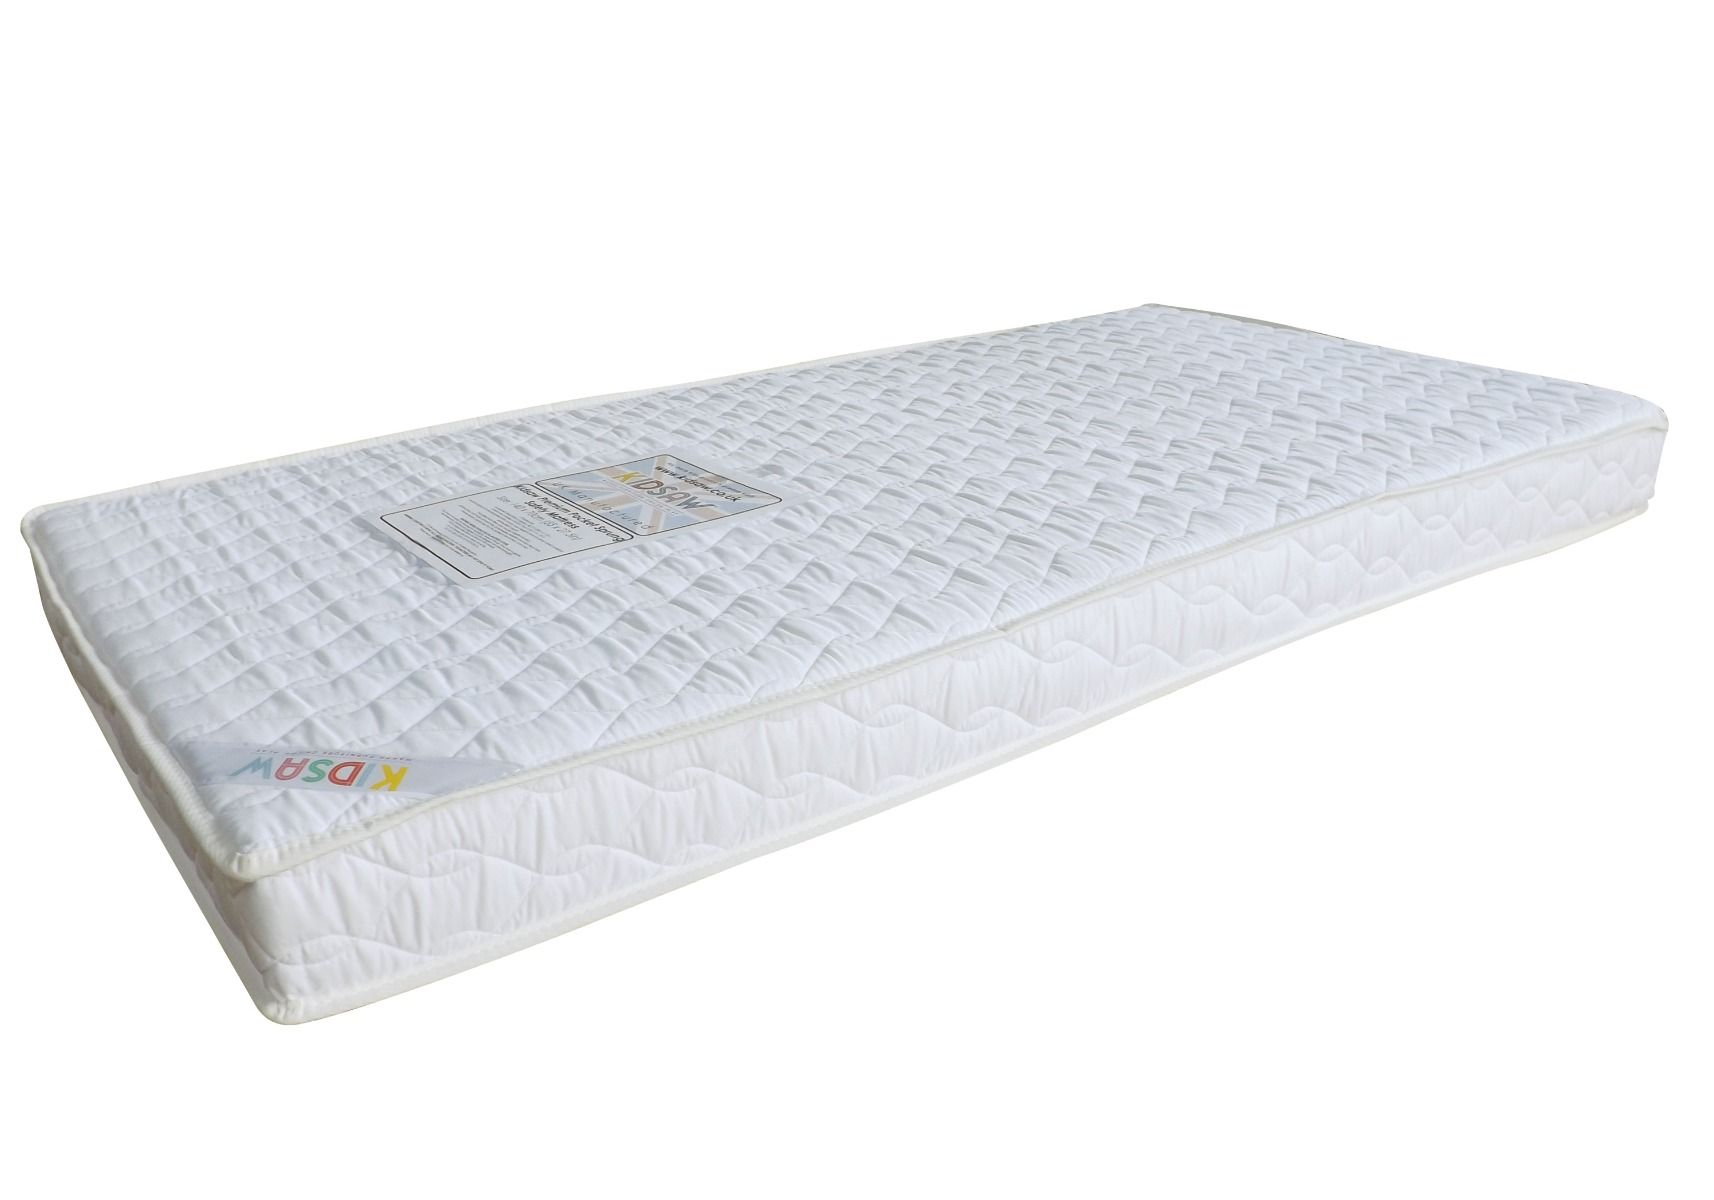 toddler bed mattress at target